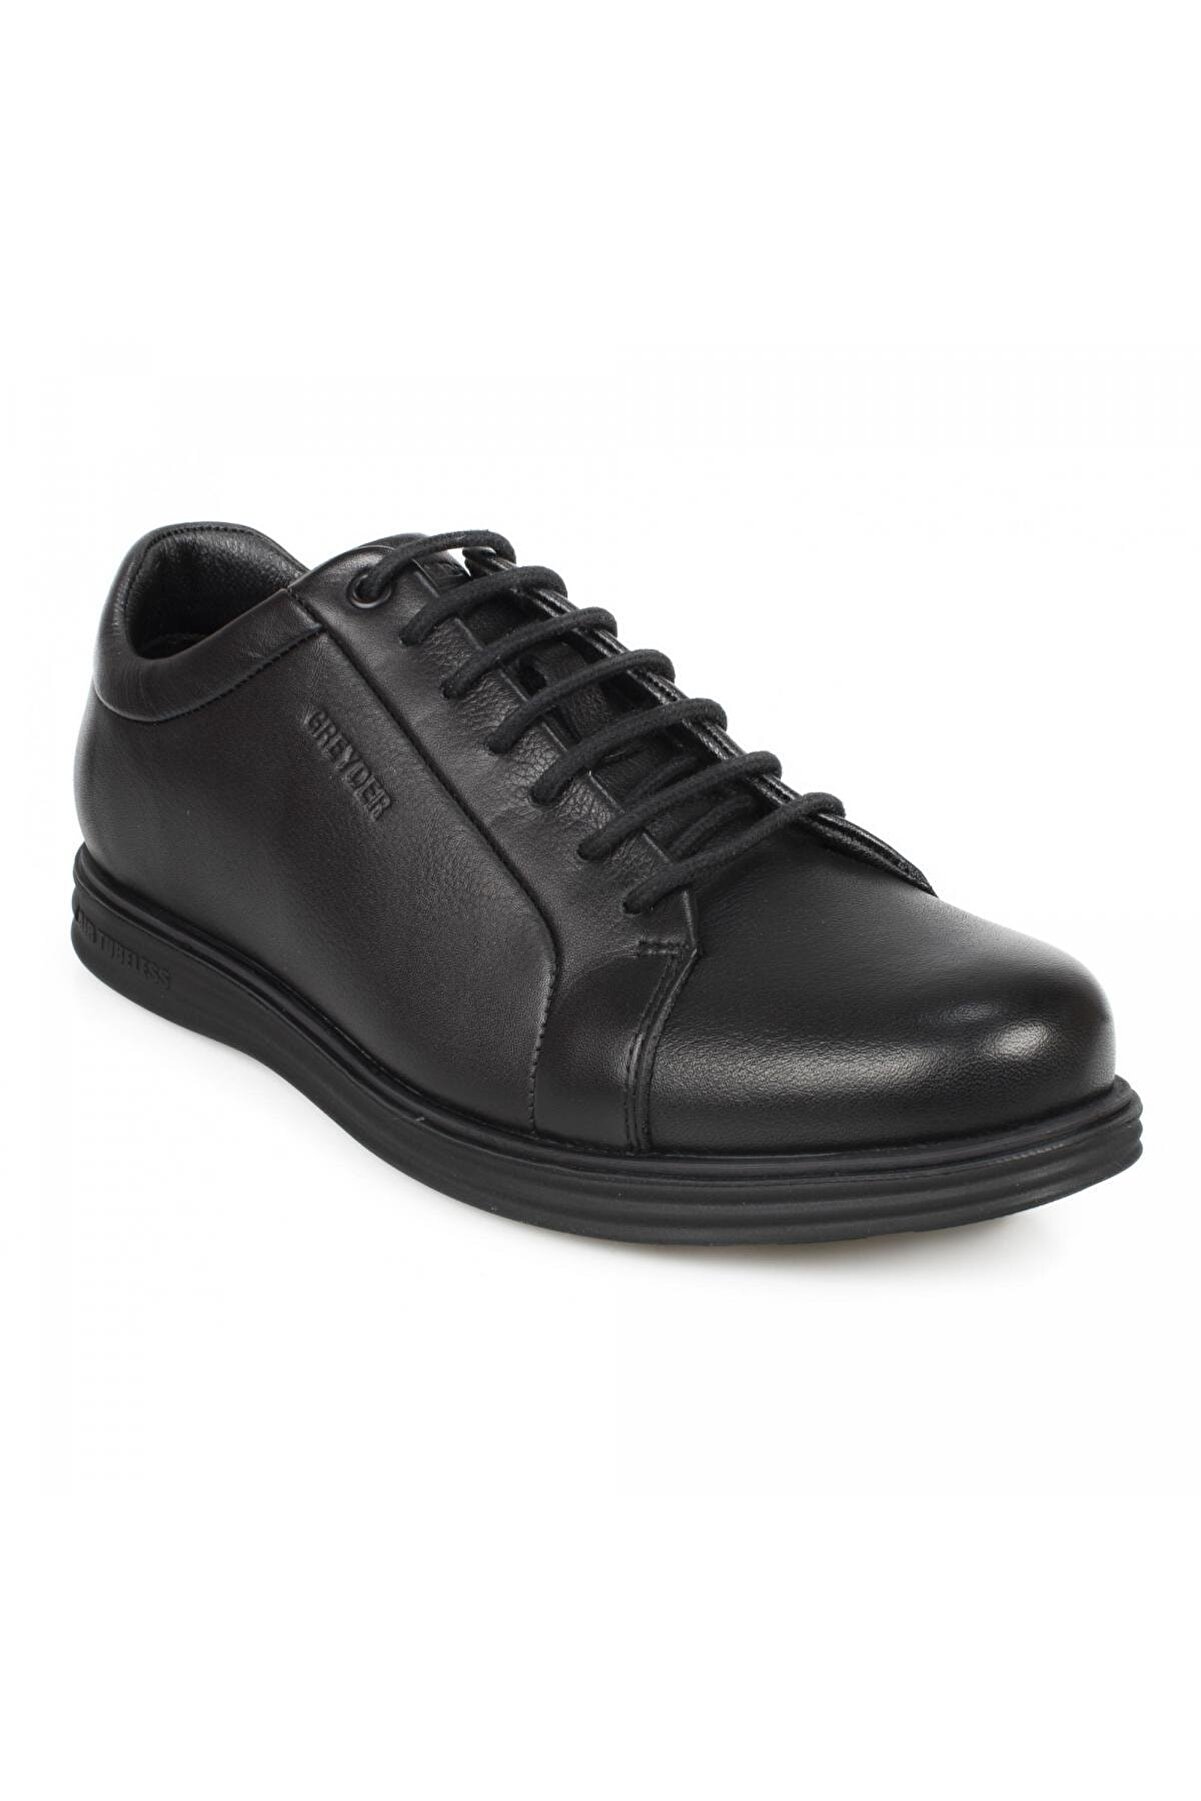 Greyder 2k1fa00240 00240 Comfort Siyah Erkek Ayakkabı